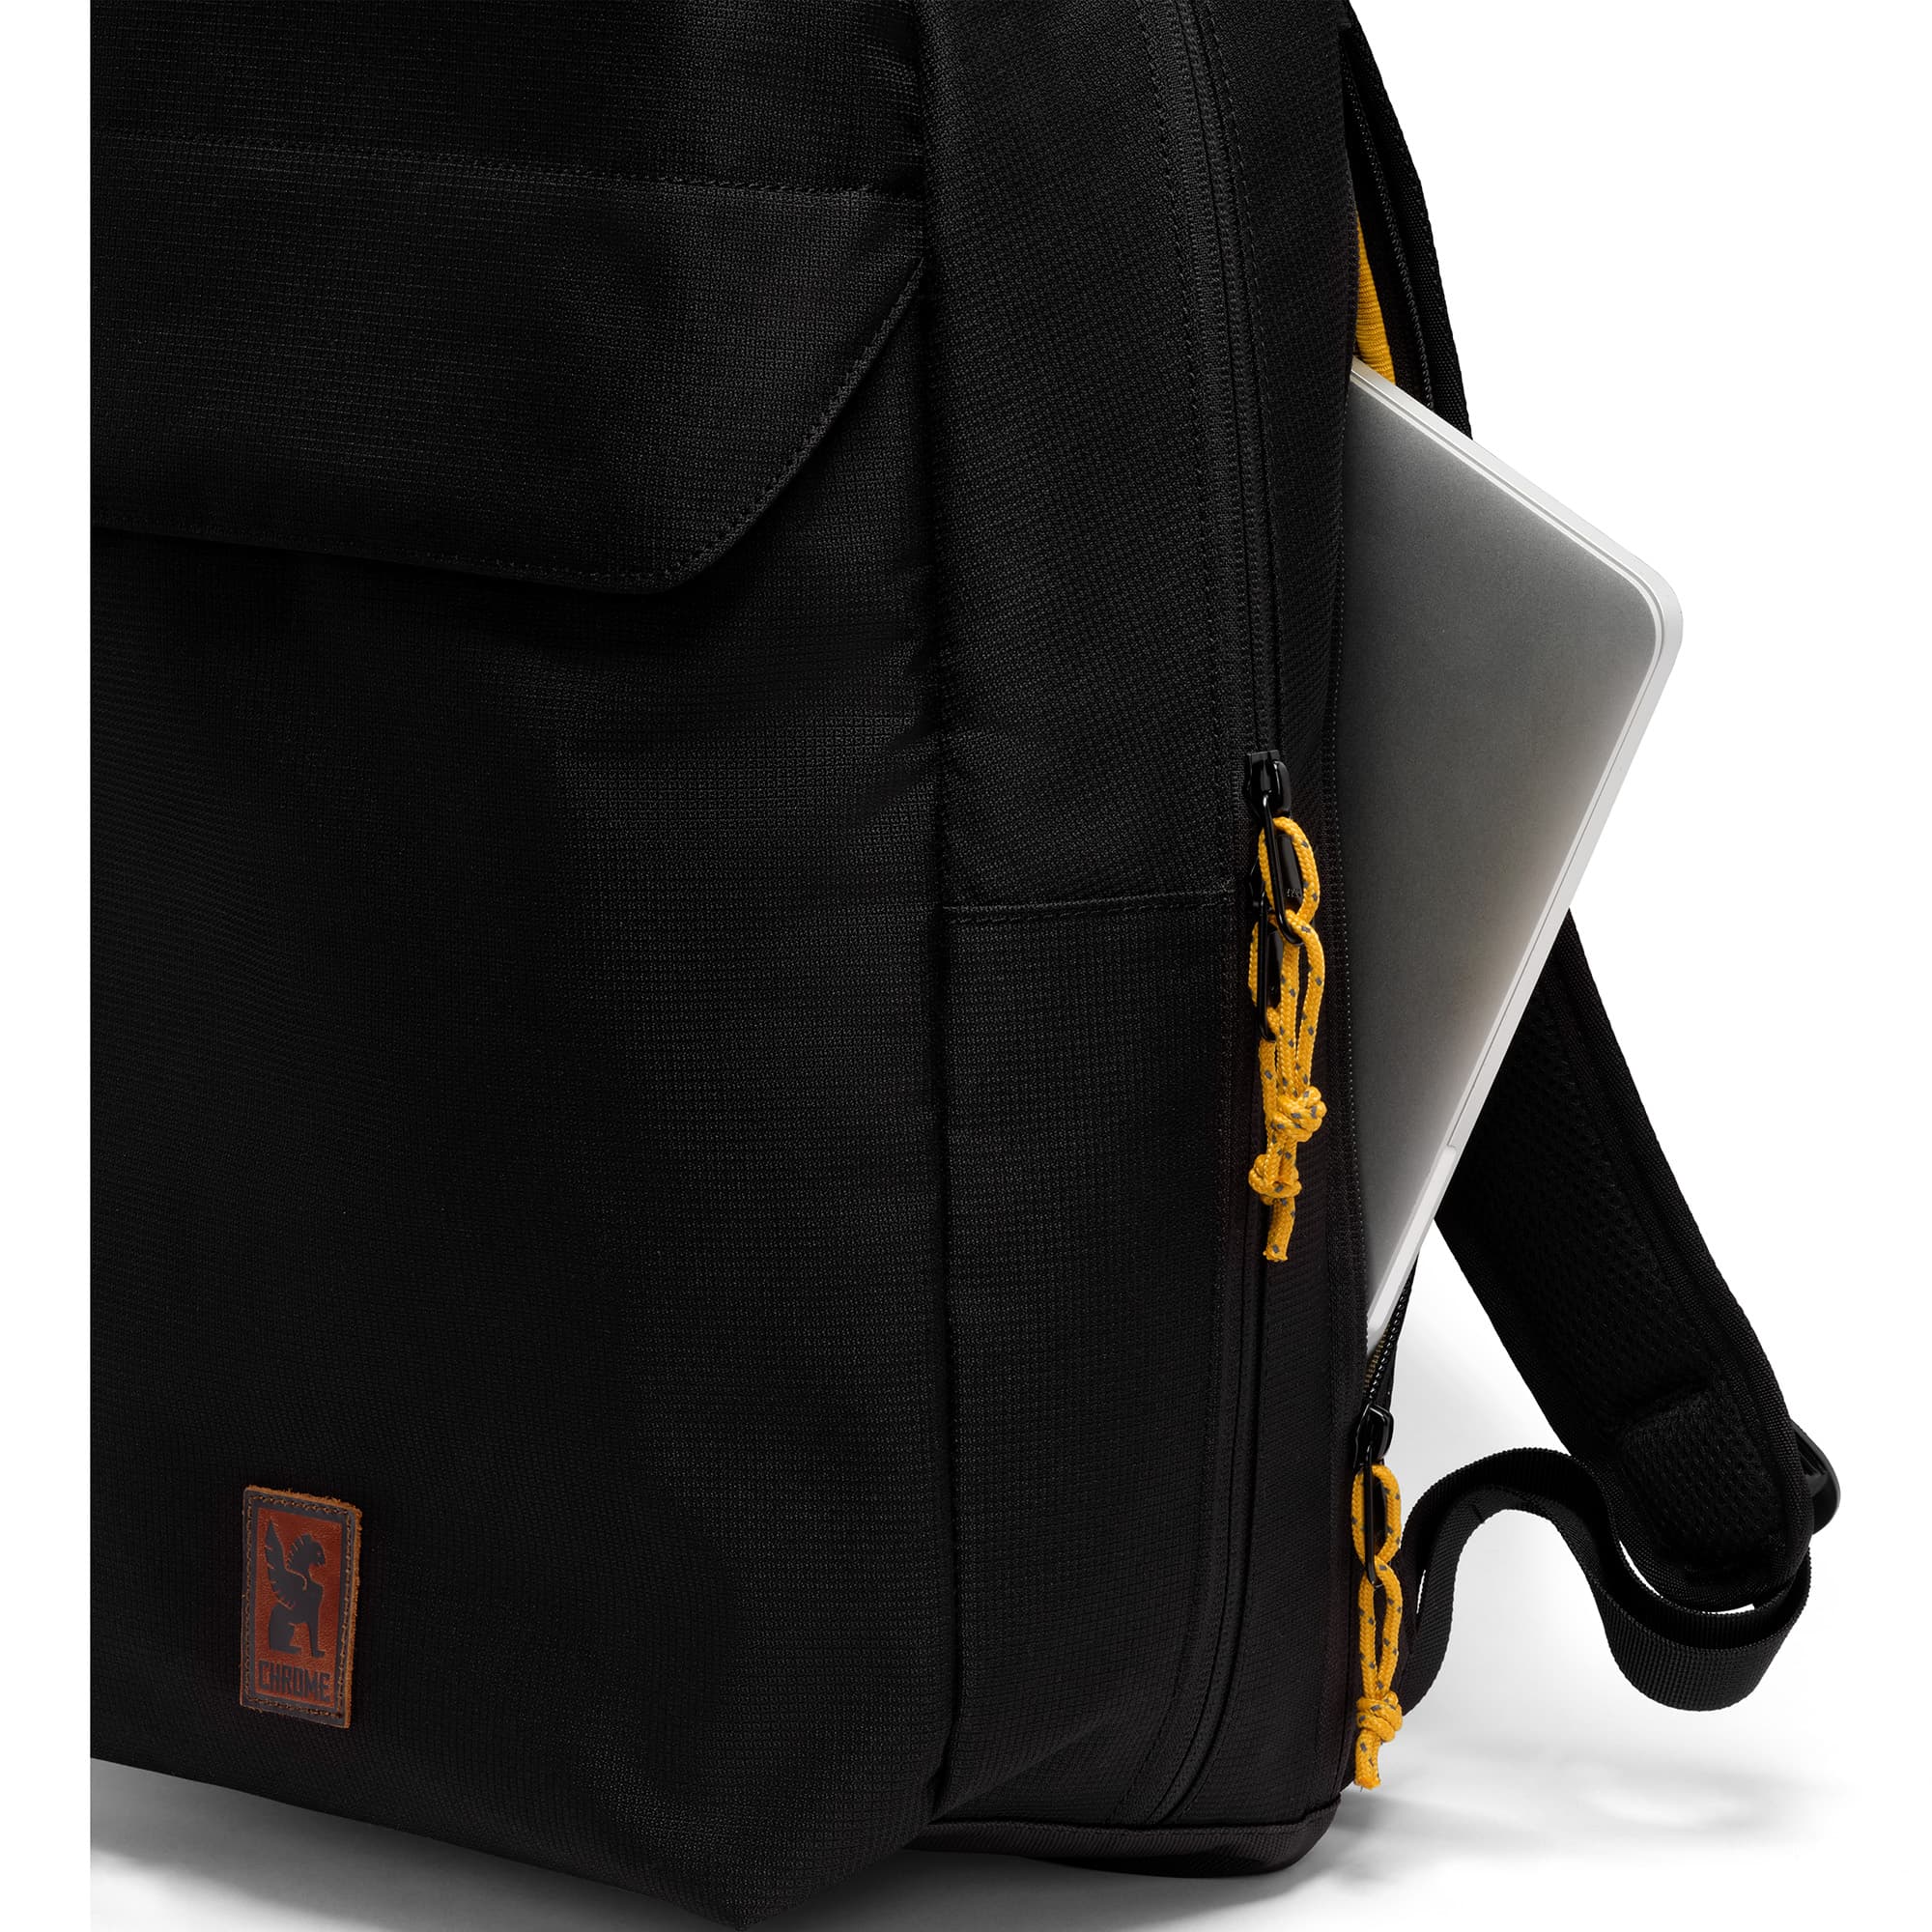 Ruckas 23L Backpack in black side zip computer pocket #color_black